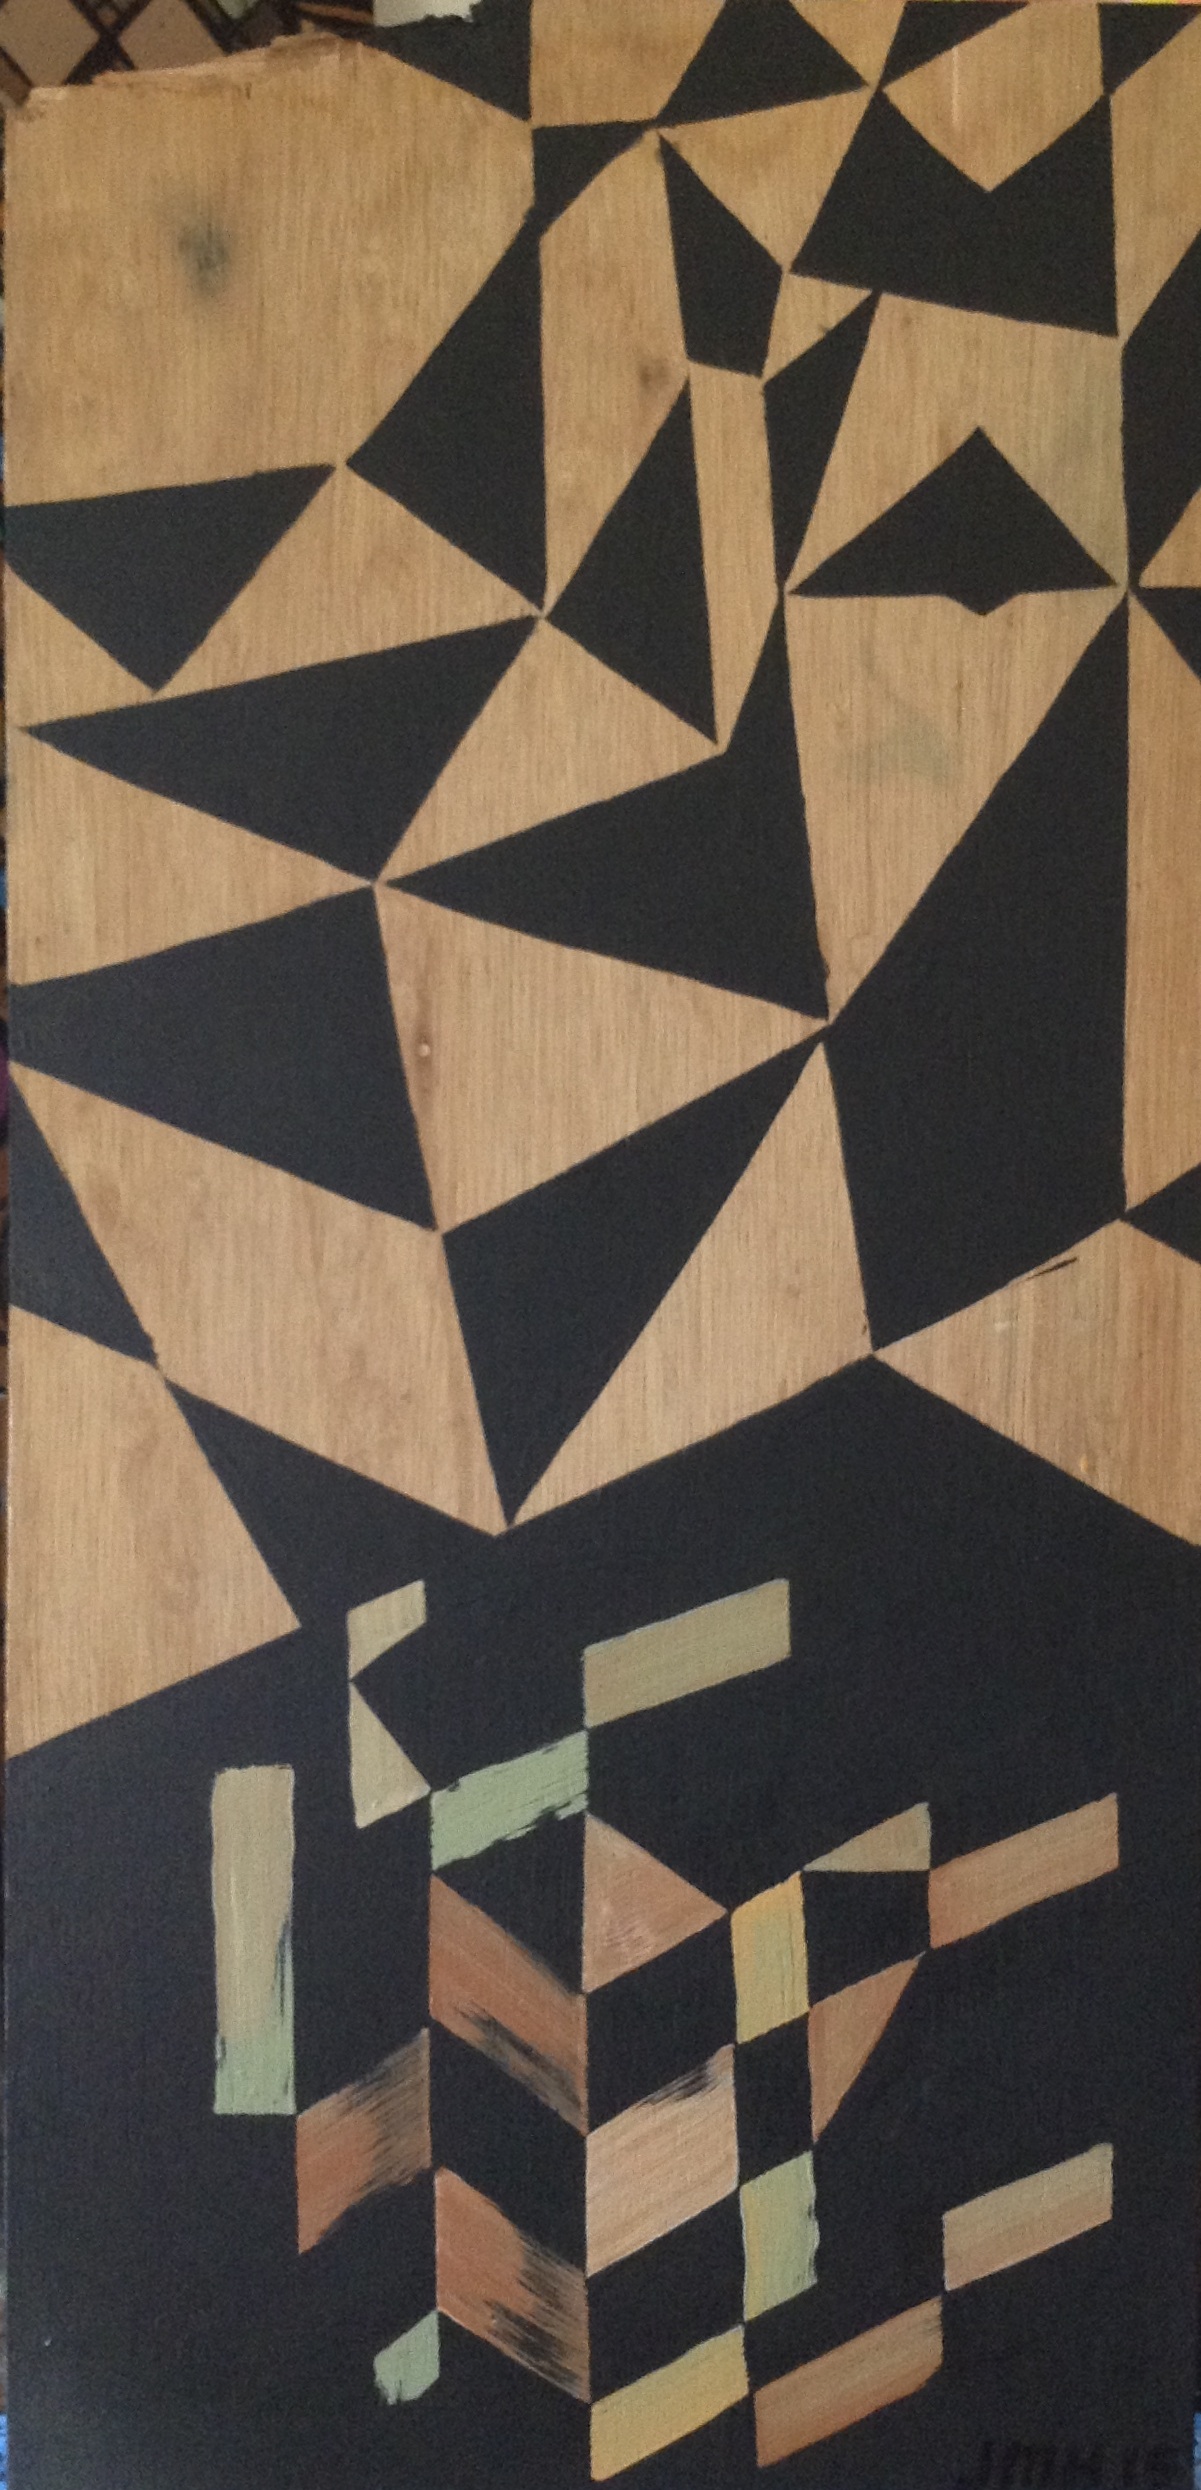  Acrylic on wood, 2015 